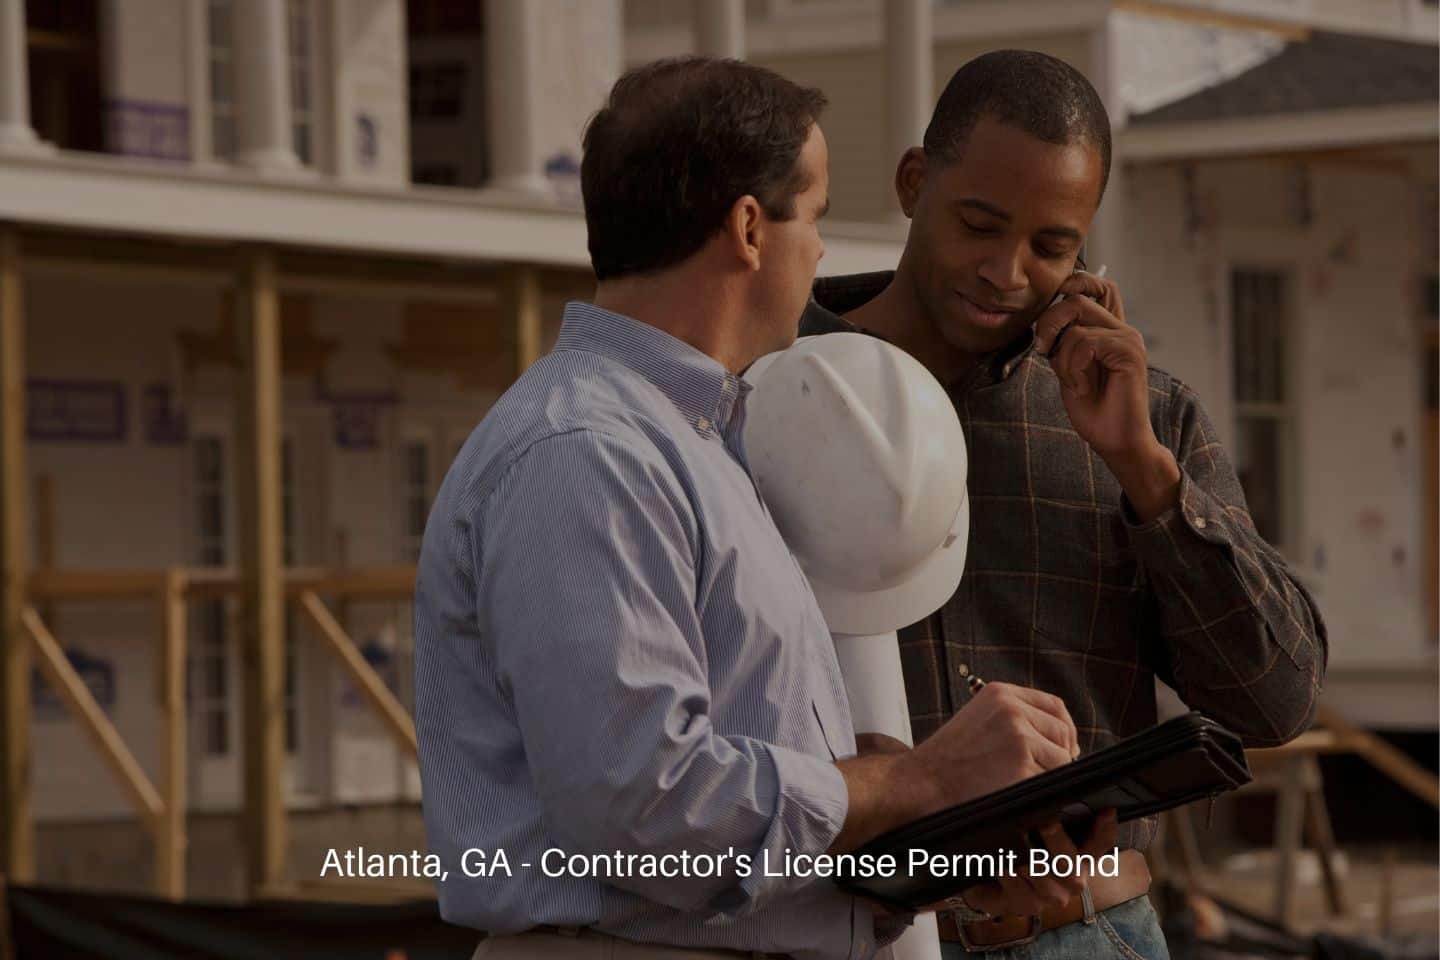 Atlanta, GA - Contractor's License Permit Bond - Two contractors looking over plan details.